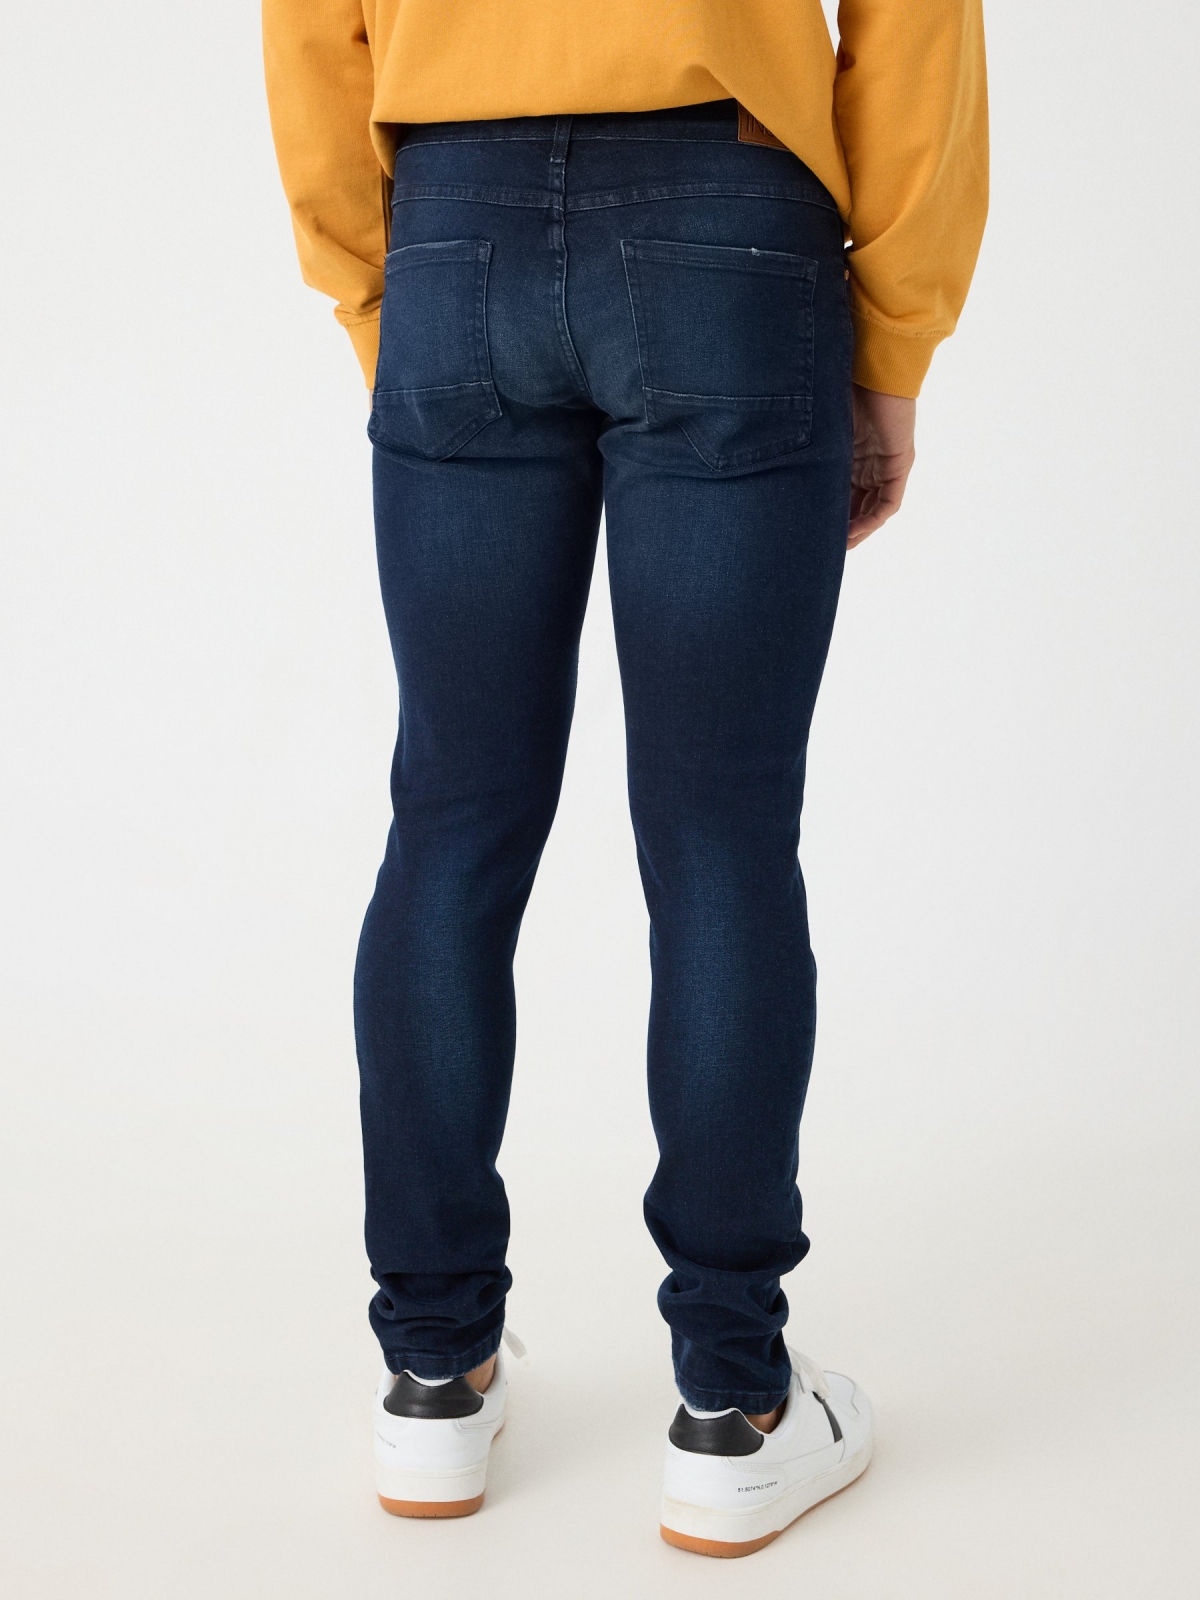 Jeans super slim azul lavado rotos azul marino vista media trasera